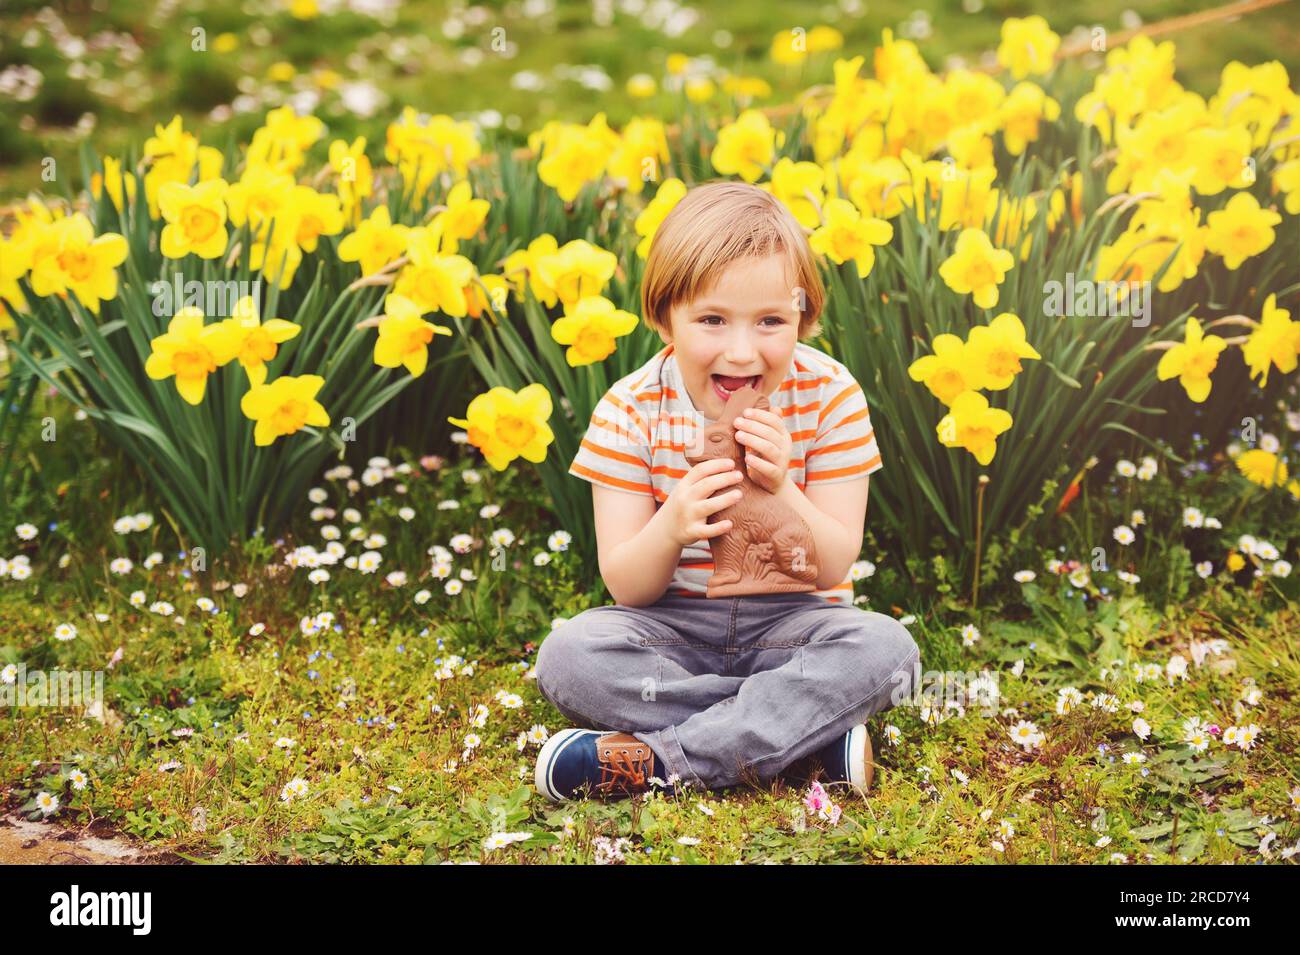 Süßer kleiner Junge mit Schokoladen-Osterhasen, der ein traditionelles Festmahl feiert. Familie, Urlaub, Frühling, sorgenfreies Kindheitskonzept. Stockfoto